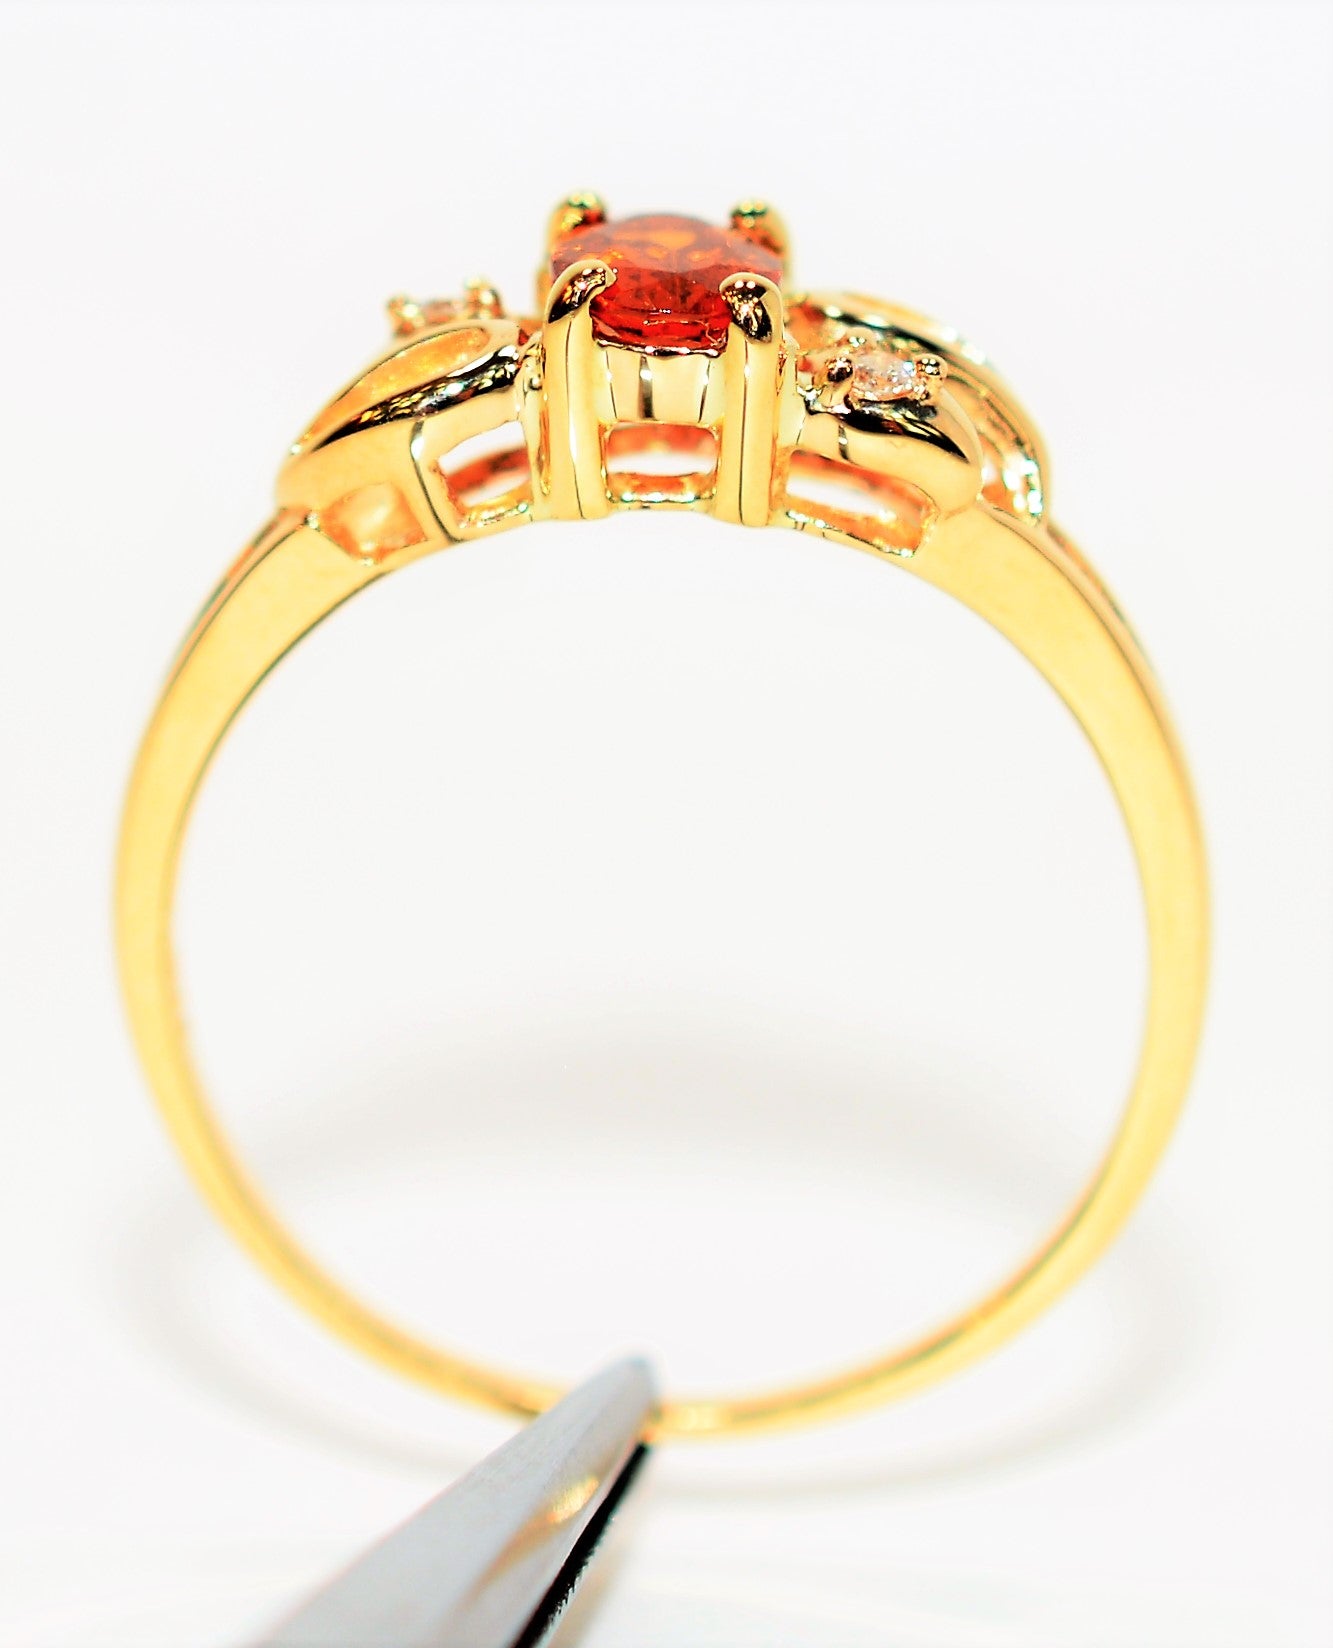 Natural Spessartine Mandarin Garnet & Diamond Ring 14K Solid Gold .59tcw Gemstone Ring Garnet Ring Birthstone Ring Orange Ring Cocktail Ring